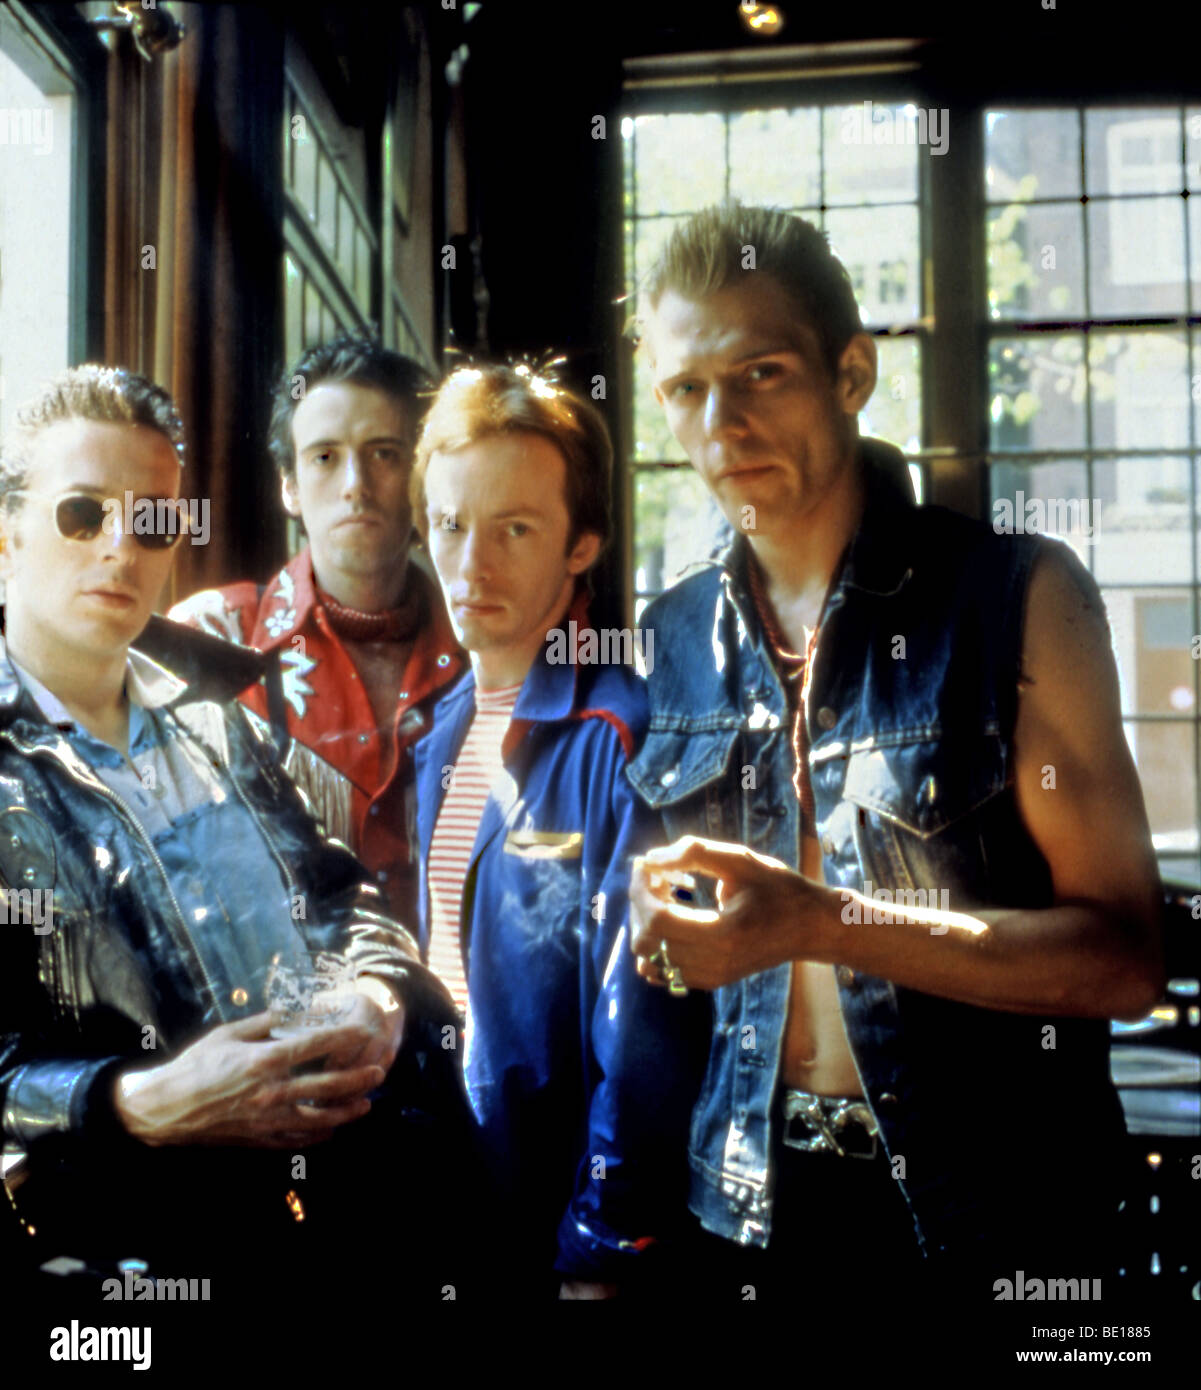 L'affrontement - groupe punk rock britannique de 1982 avec Joe Strummer à gauche. Photo Laurens van Houten Banque D'Images